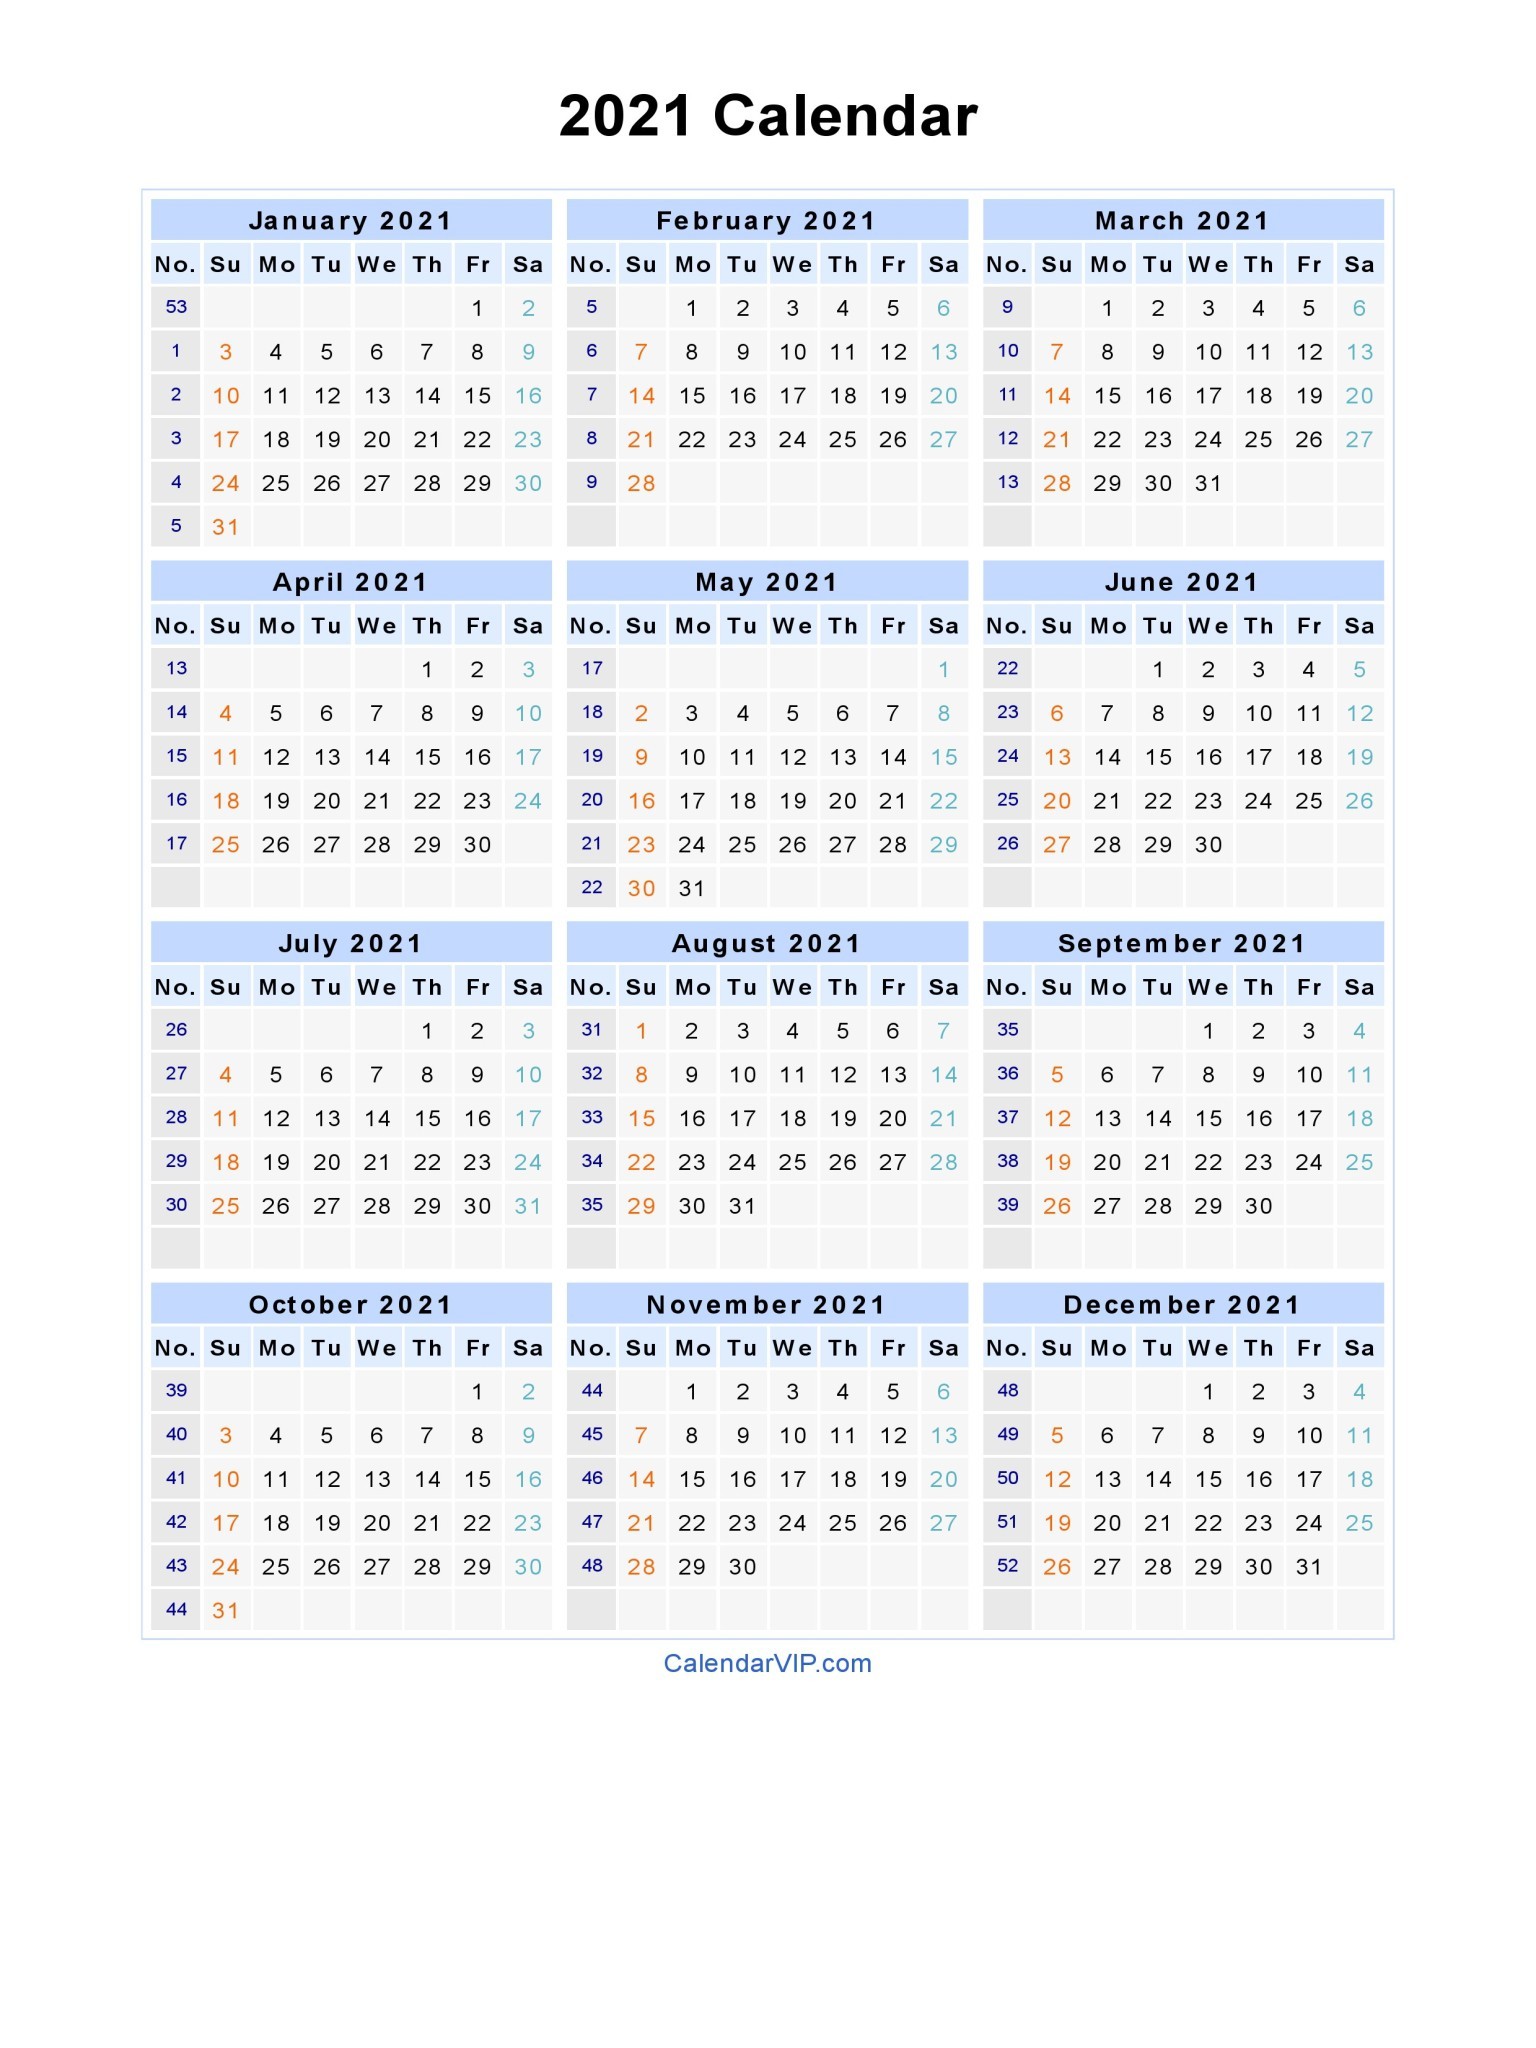 2021 Calendar with Week Numbers Excel Full 2021 Calendar with Week Numbers Excel Full